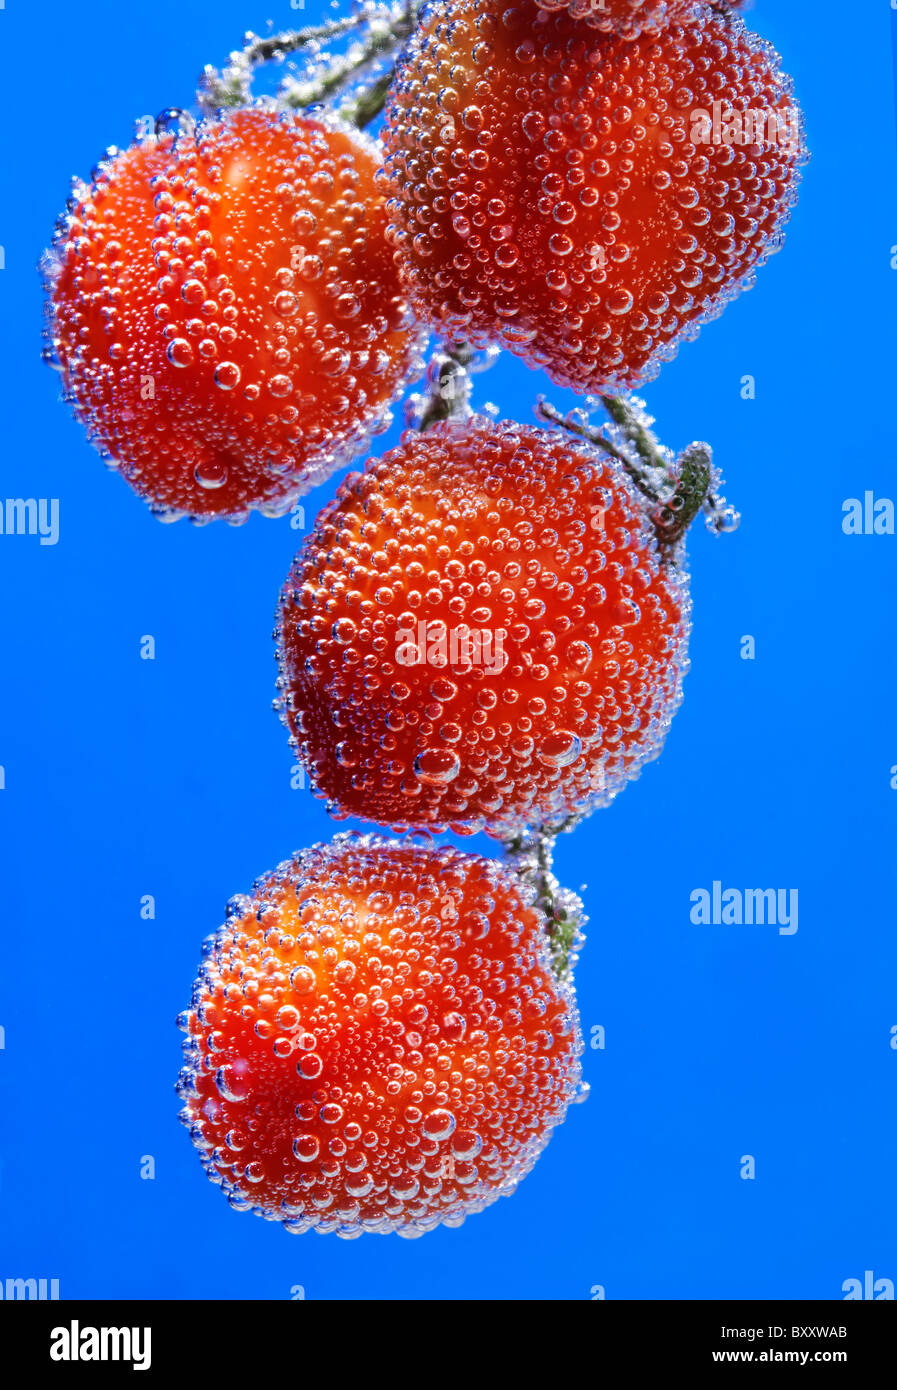 Tomates cherry rojo sobre fondo azul, con burbujas de agua. Foto de stock